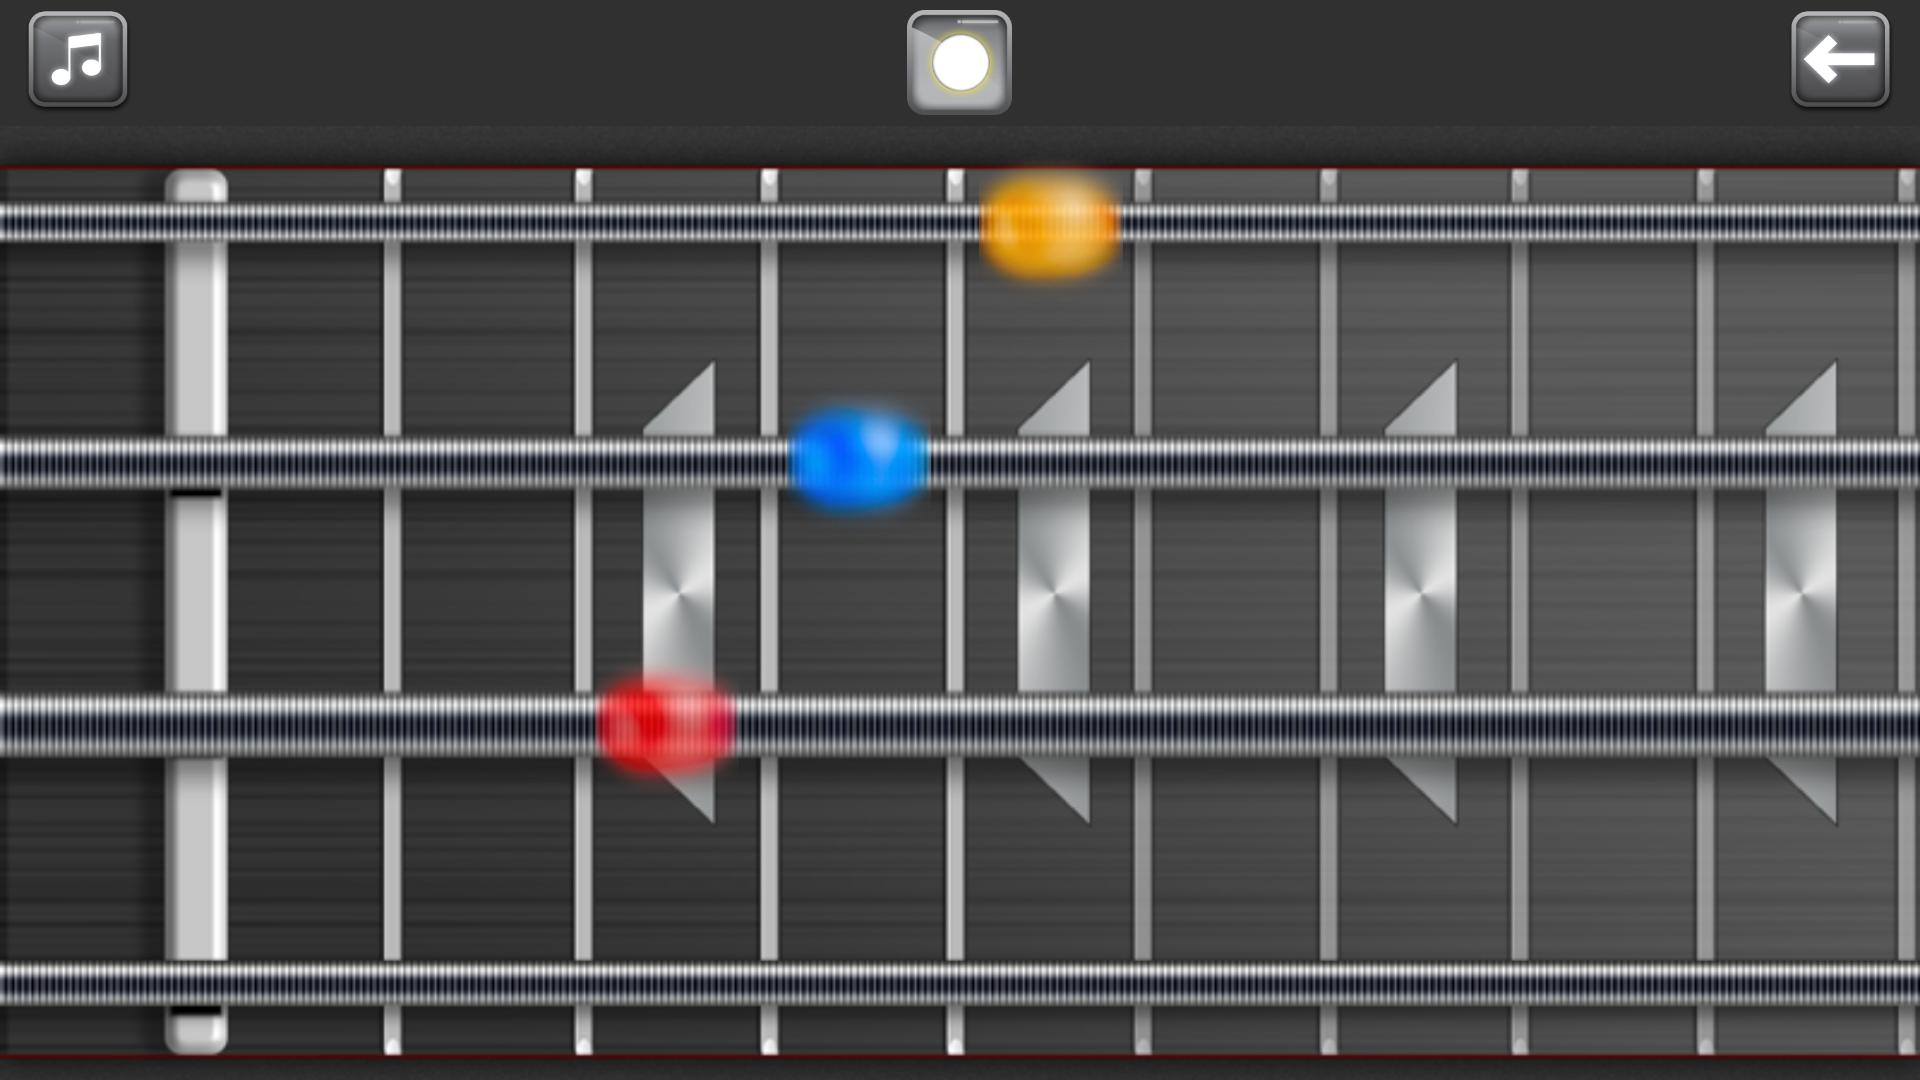 Band Live Rock 🎵 drum, bass, guitar, piano, mic 3.3.2 Screenshot 5